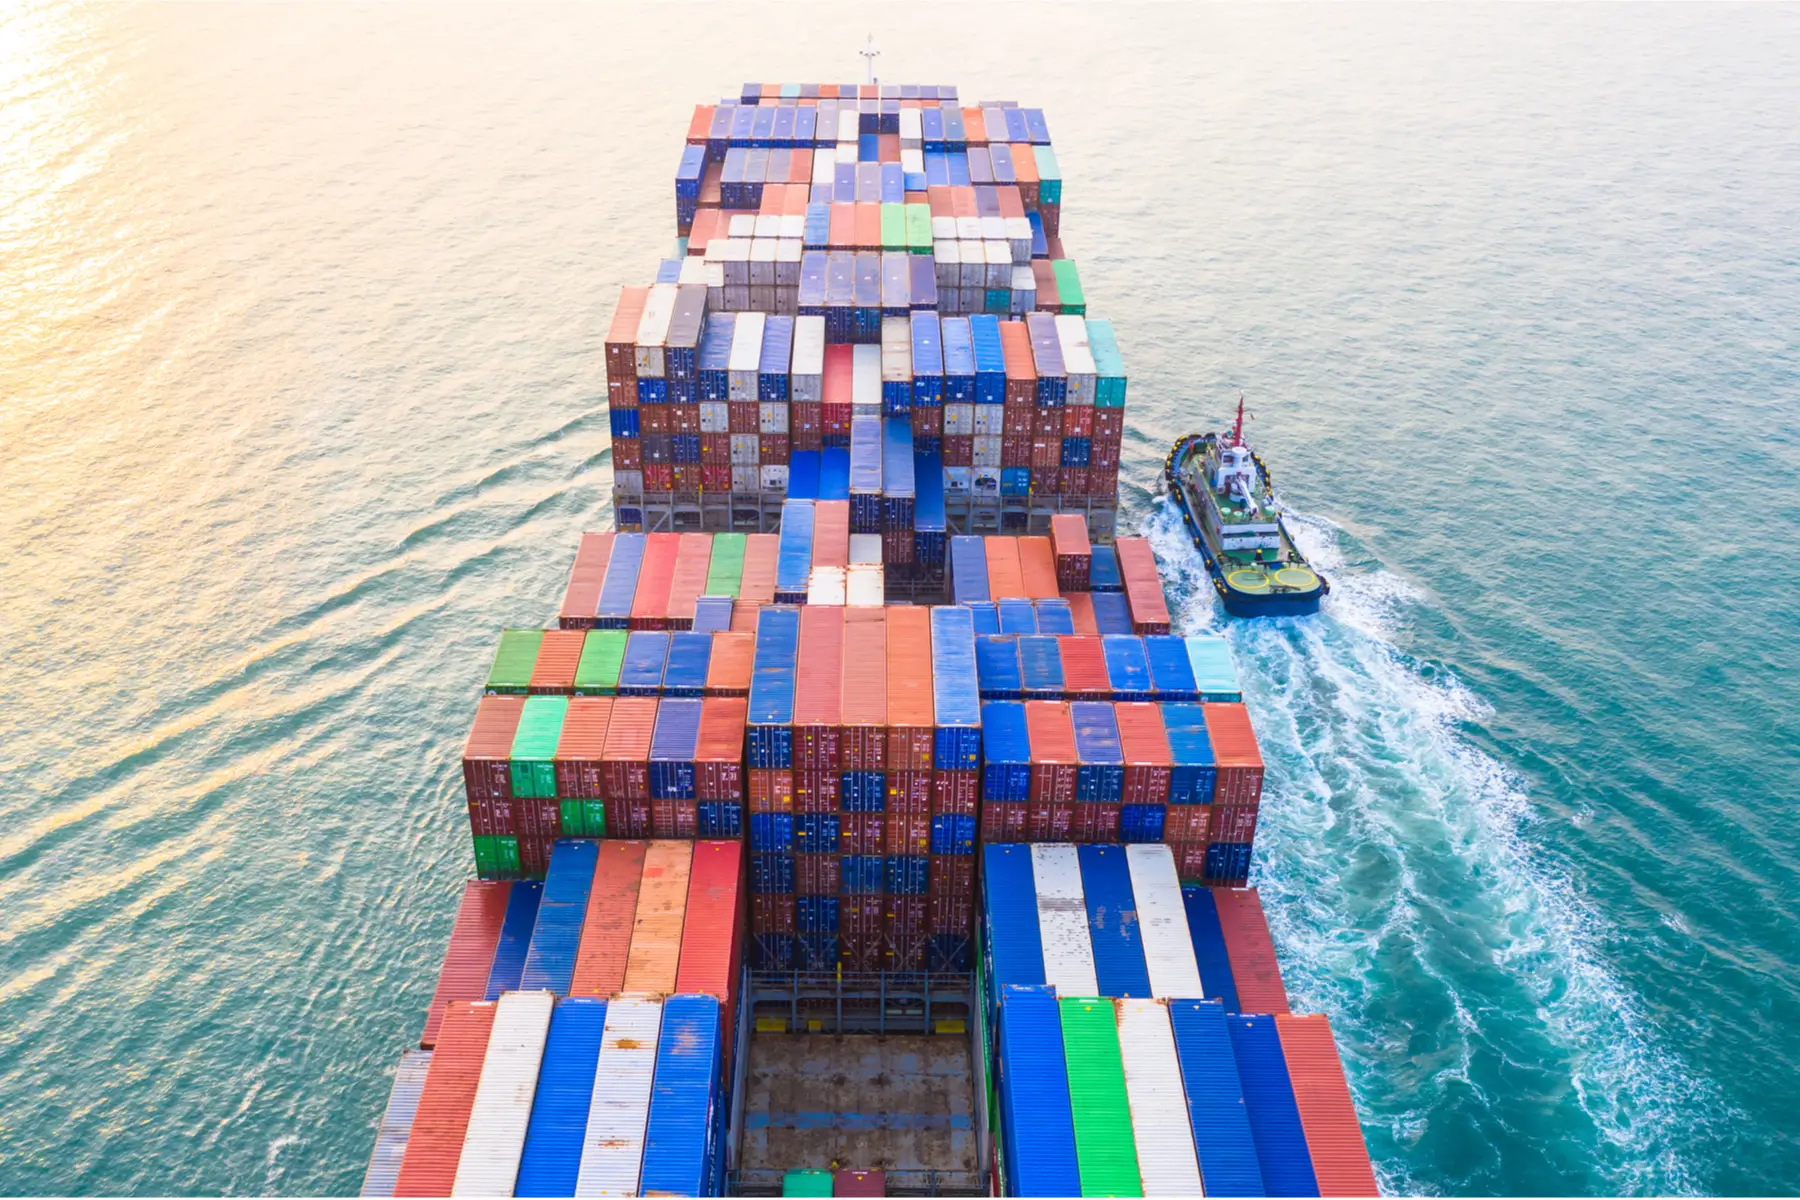 cargo ship at sea, UAE